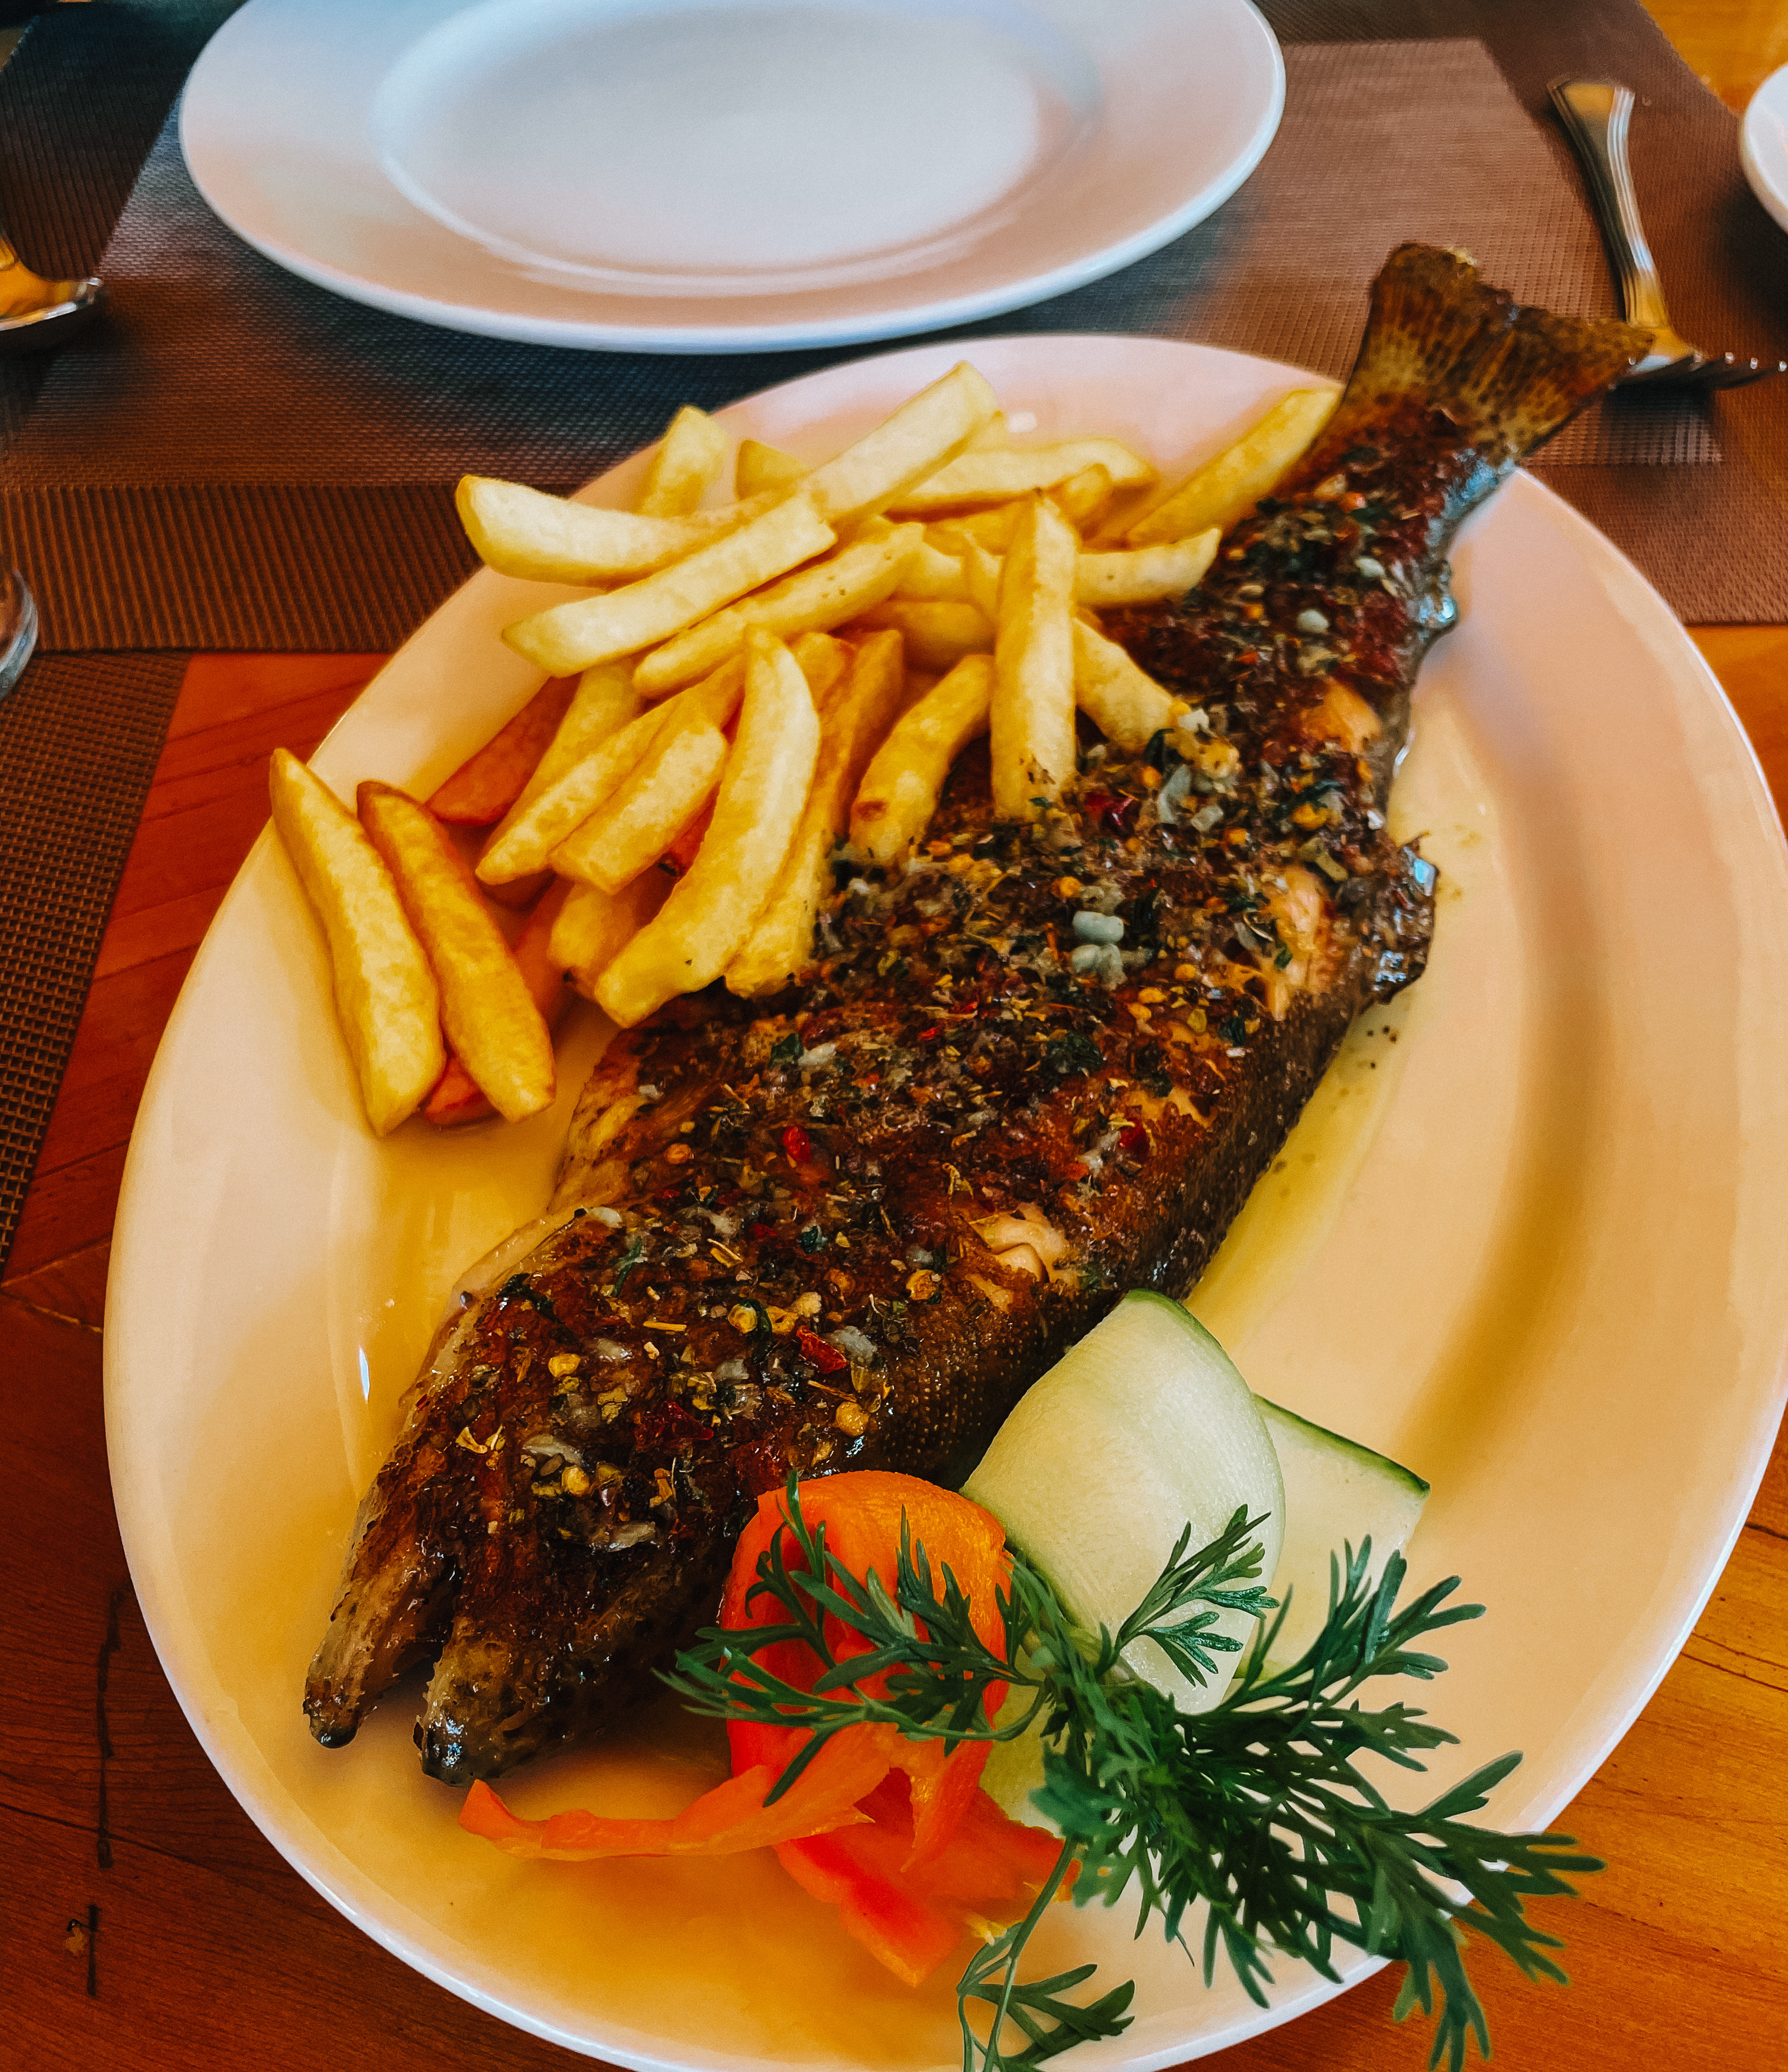 A bass fish dinner at Shangri-La Resort in Skardu, Pakistan